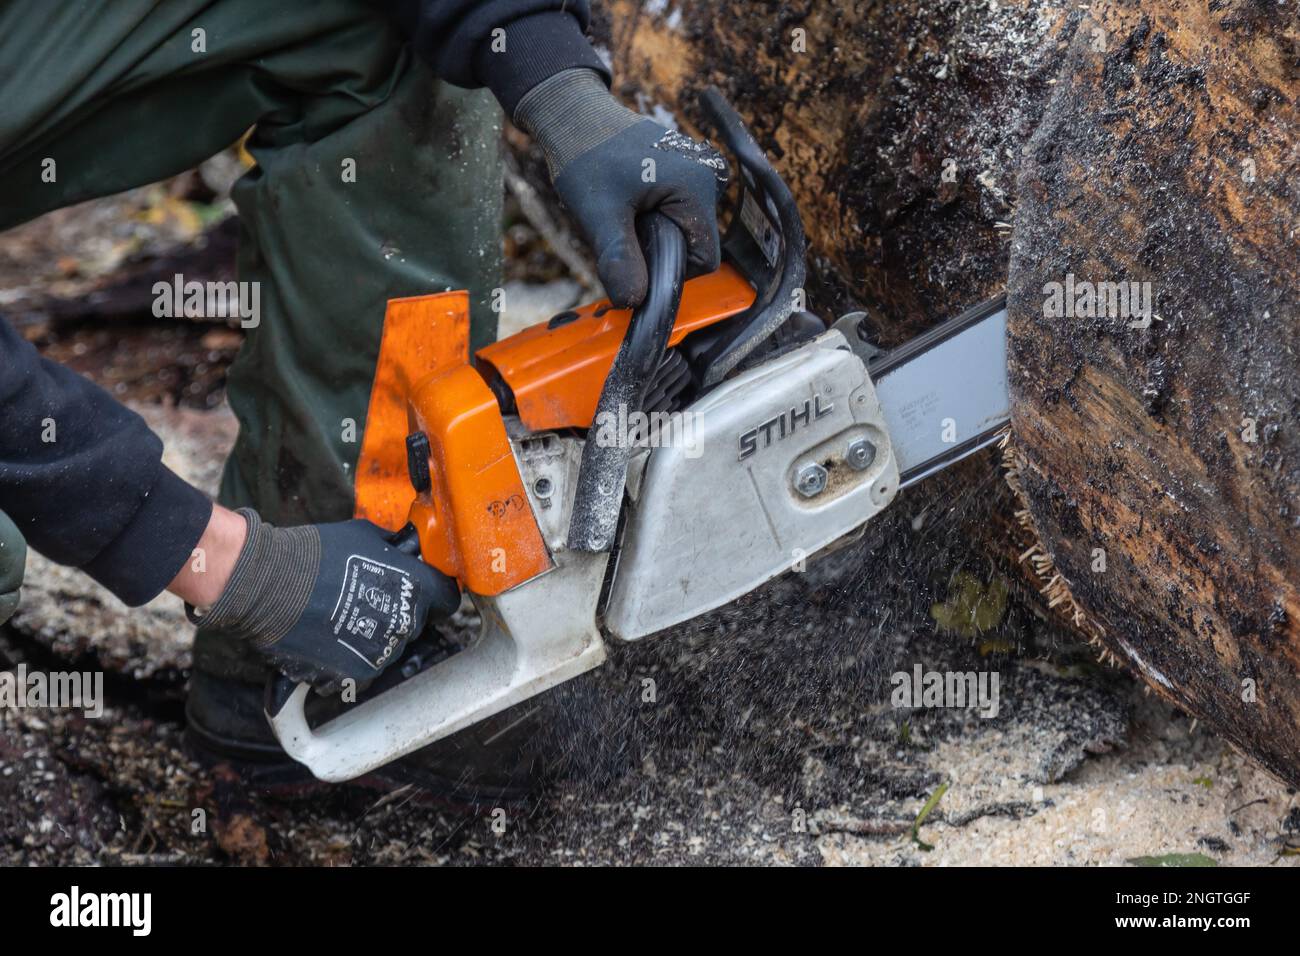 Neuwied, Germania - 22 ottobre 2022: H una motosega Stihl tagliava un tronco d'albero che giace sul terreno. Stihl è un produttore tedesco di catene Foto Stock